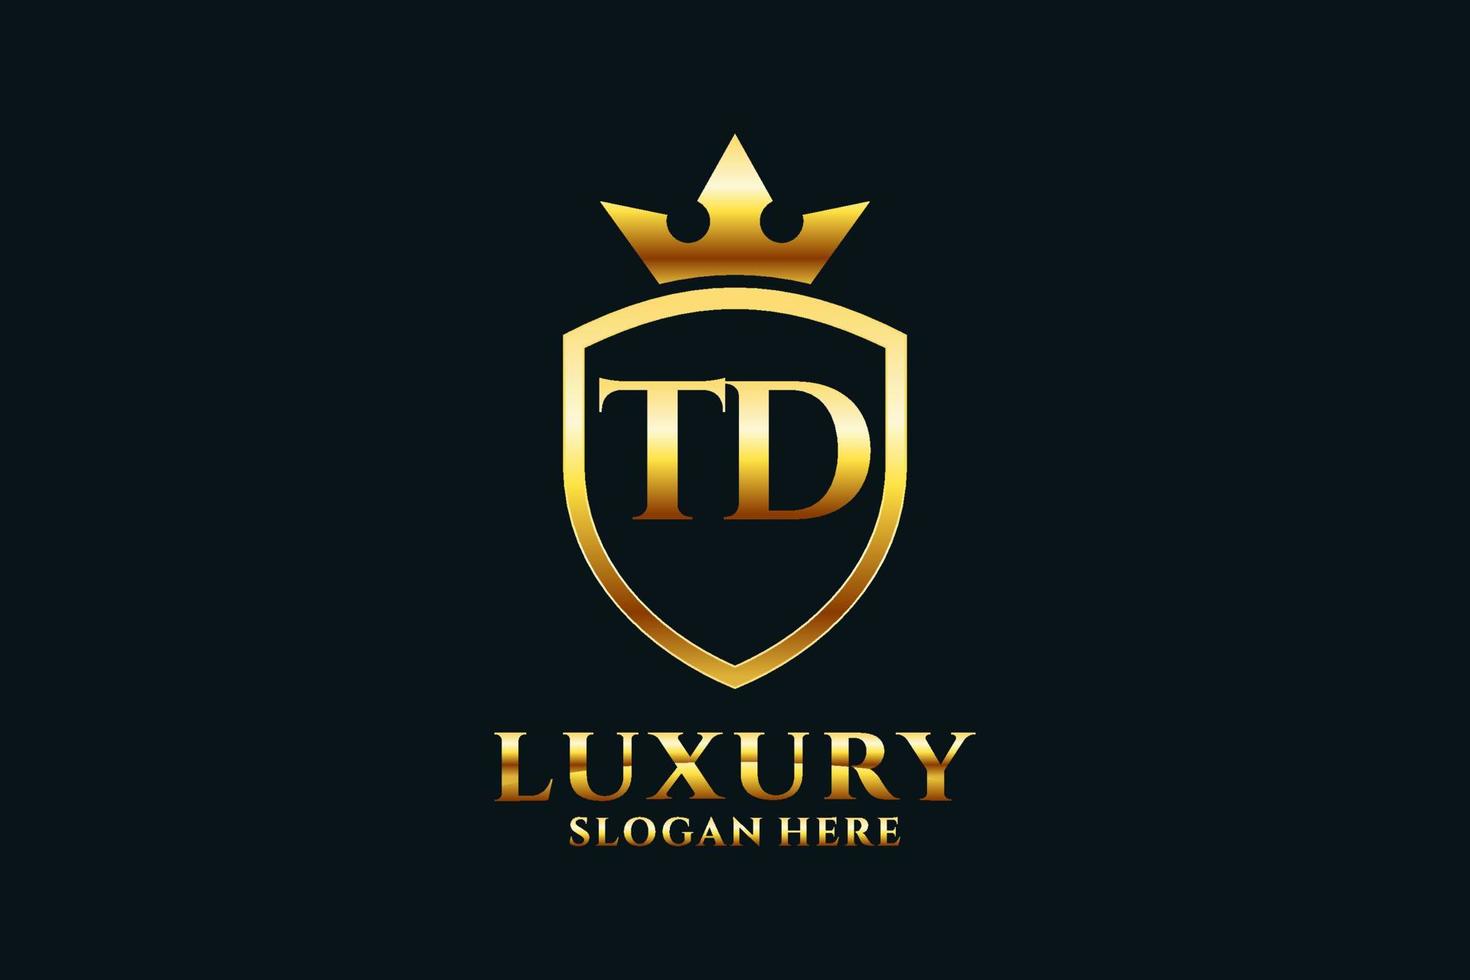 logo monogramme de luxe élégant initial td ou modèle de badge avec volutes et couronne royale - parfait pour les projets de marque de luxe vecteur